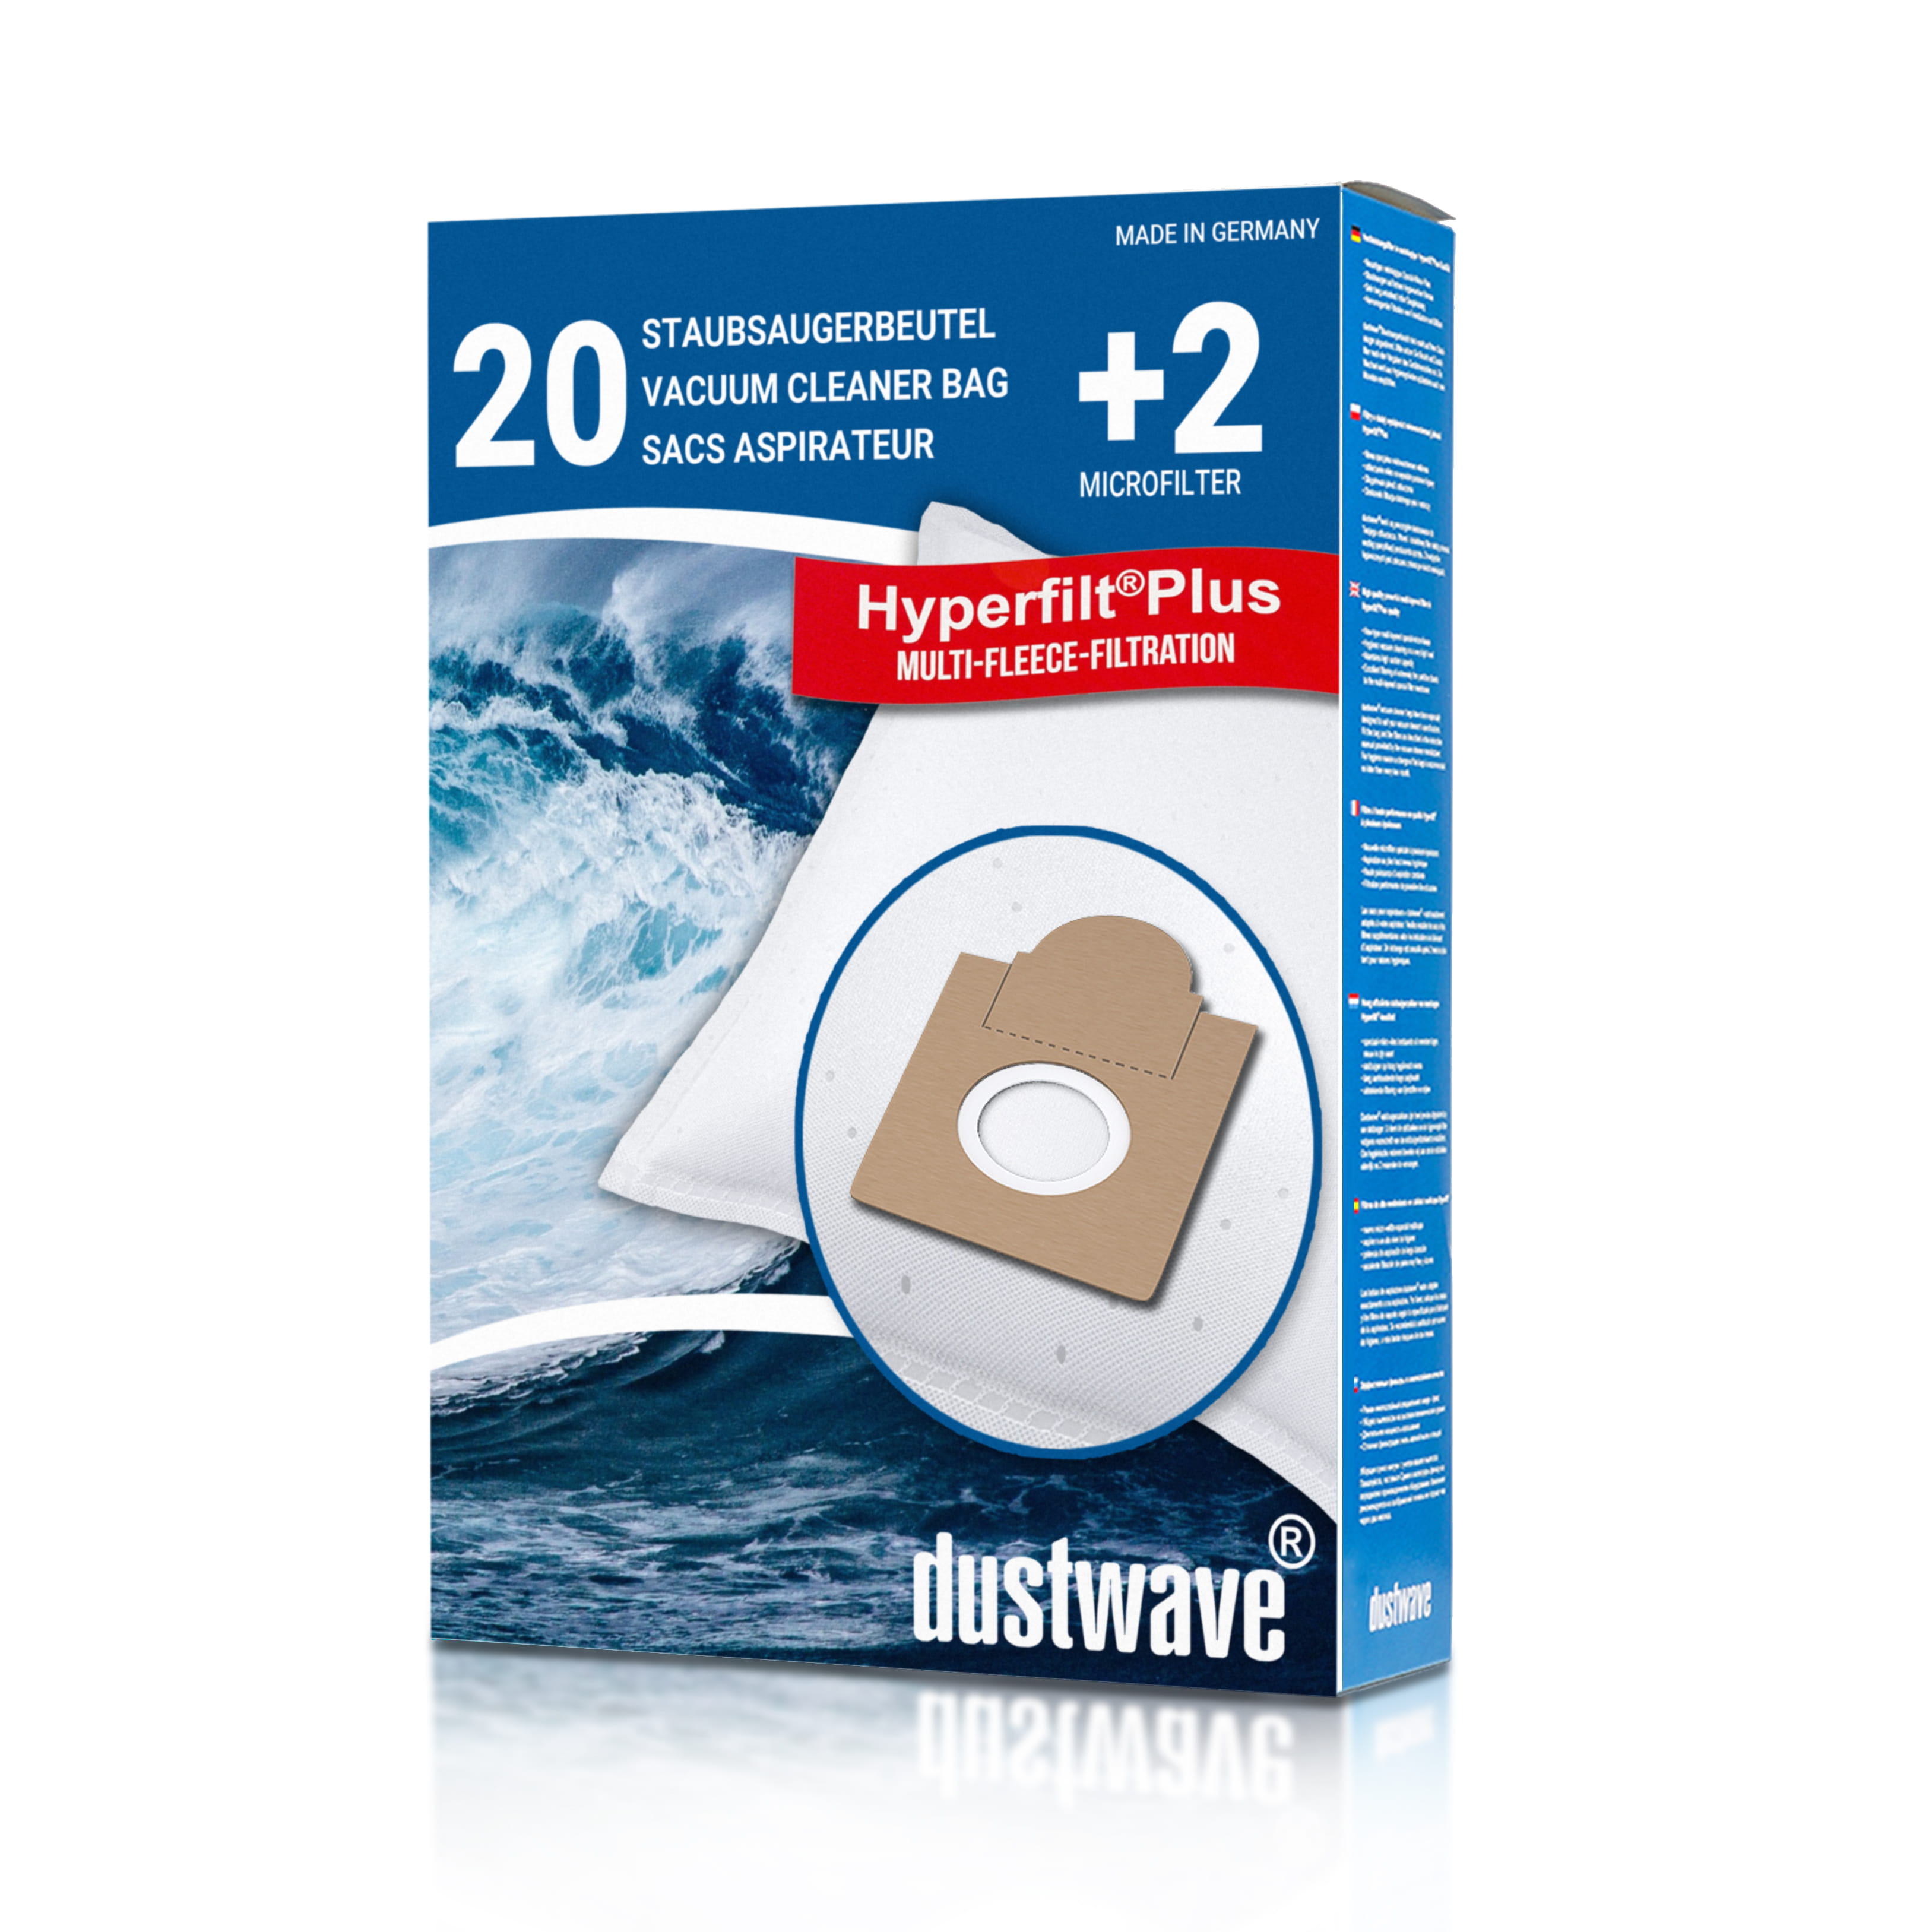 Dustwave® 20 Staubsaugerbeutel für Brinkmann Topline 1300 - hocheffizient, mehrlagiges Mikrovlies mit Hygieneverschluss - Made in Germany